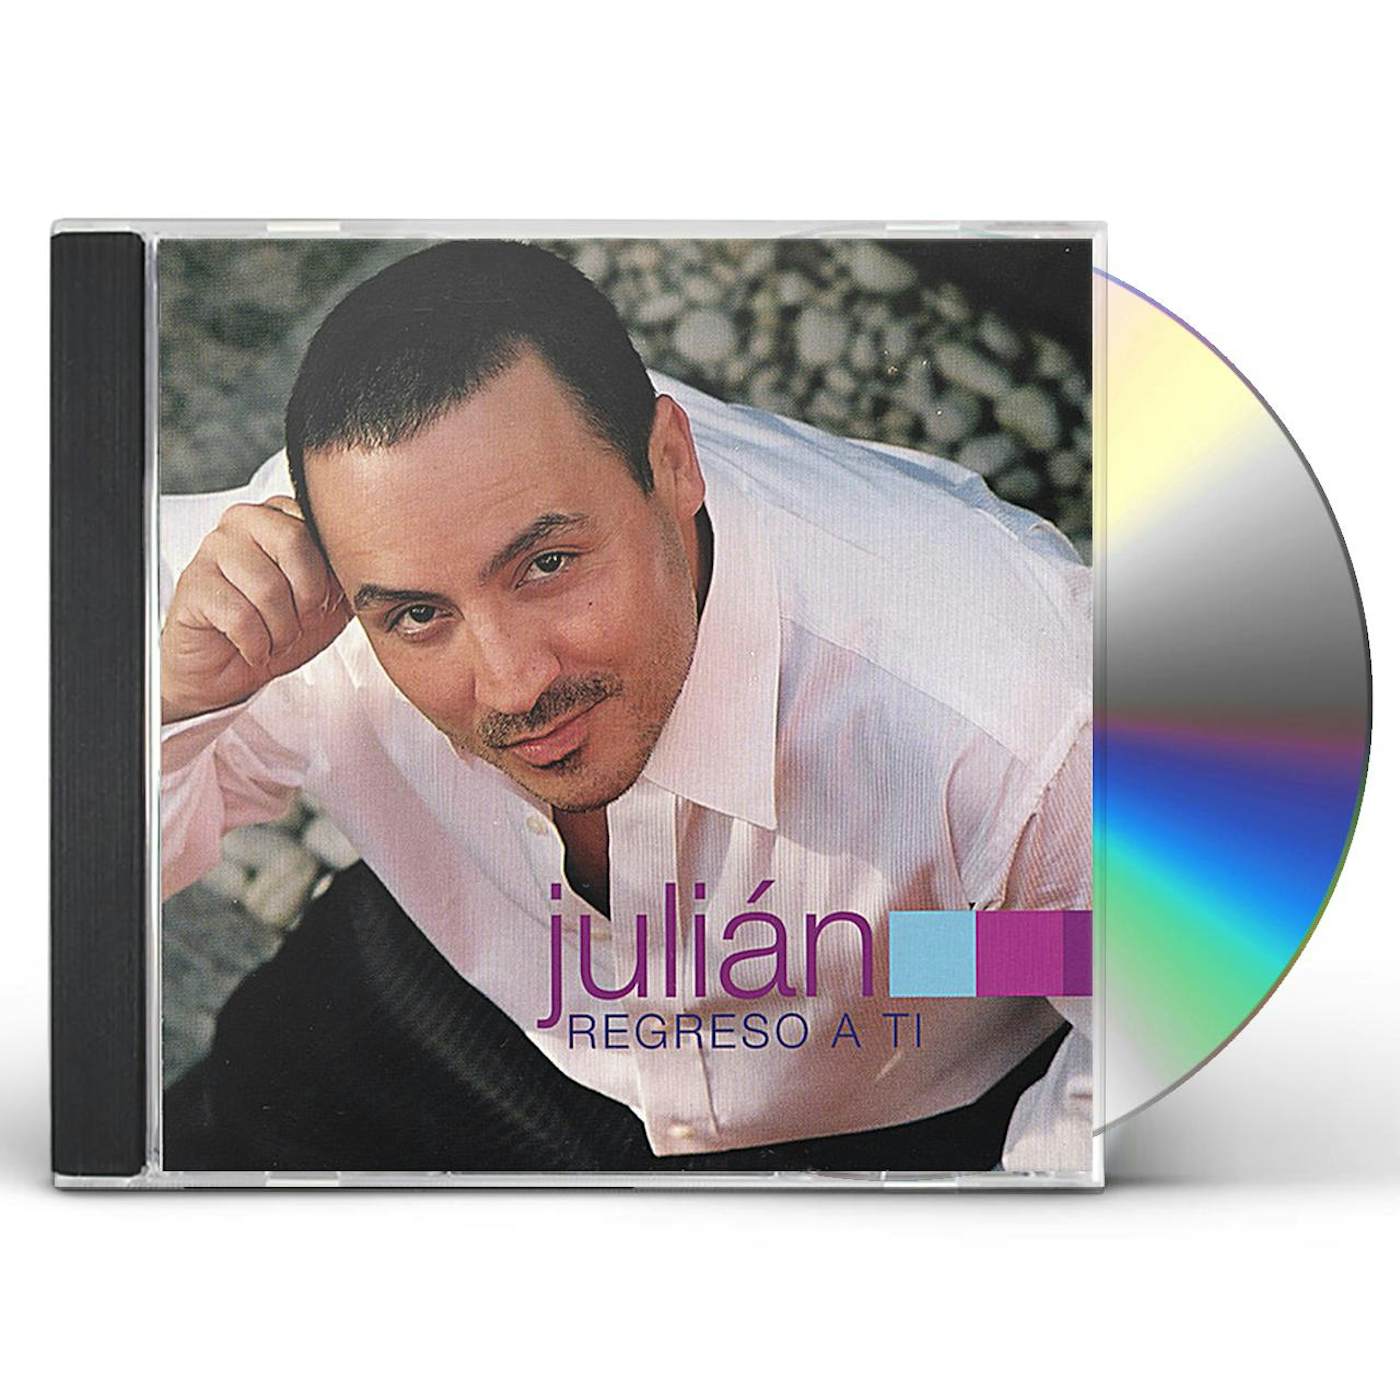 Julian REGRESO A TI CD